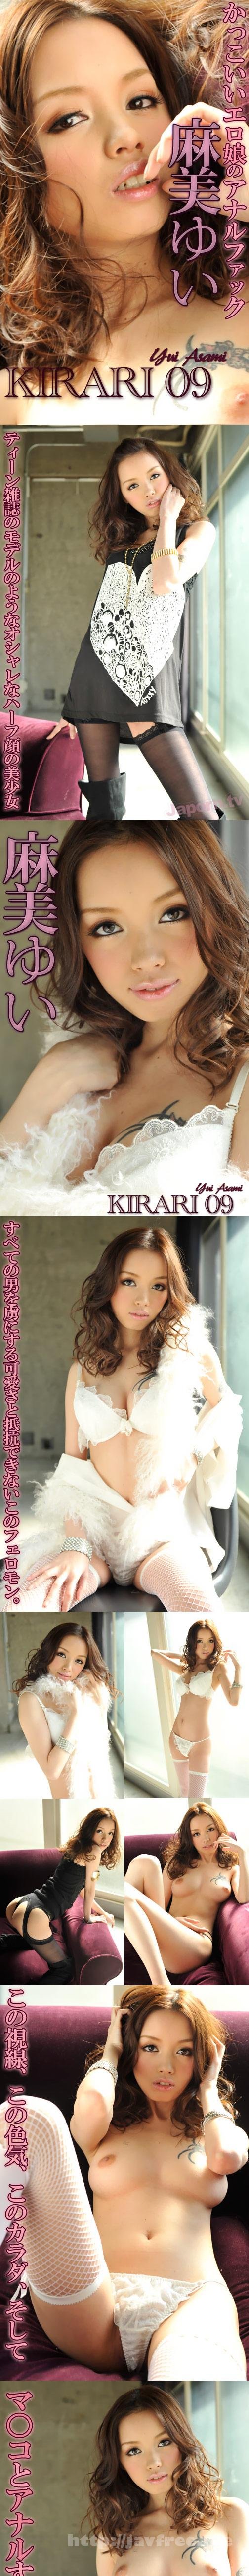 [MKD-S09] KIRARI 09 : Yui Mami